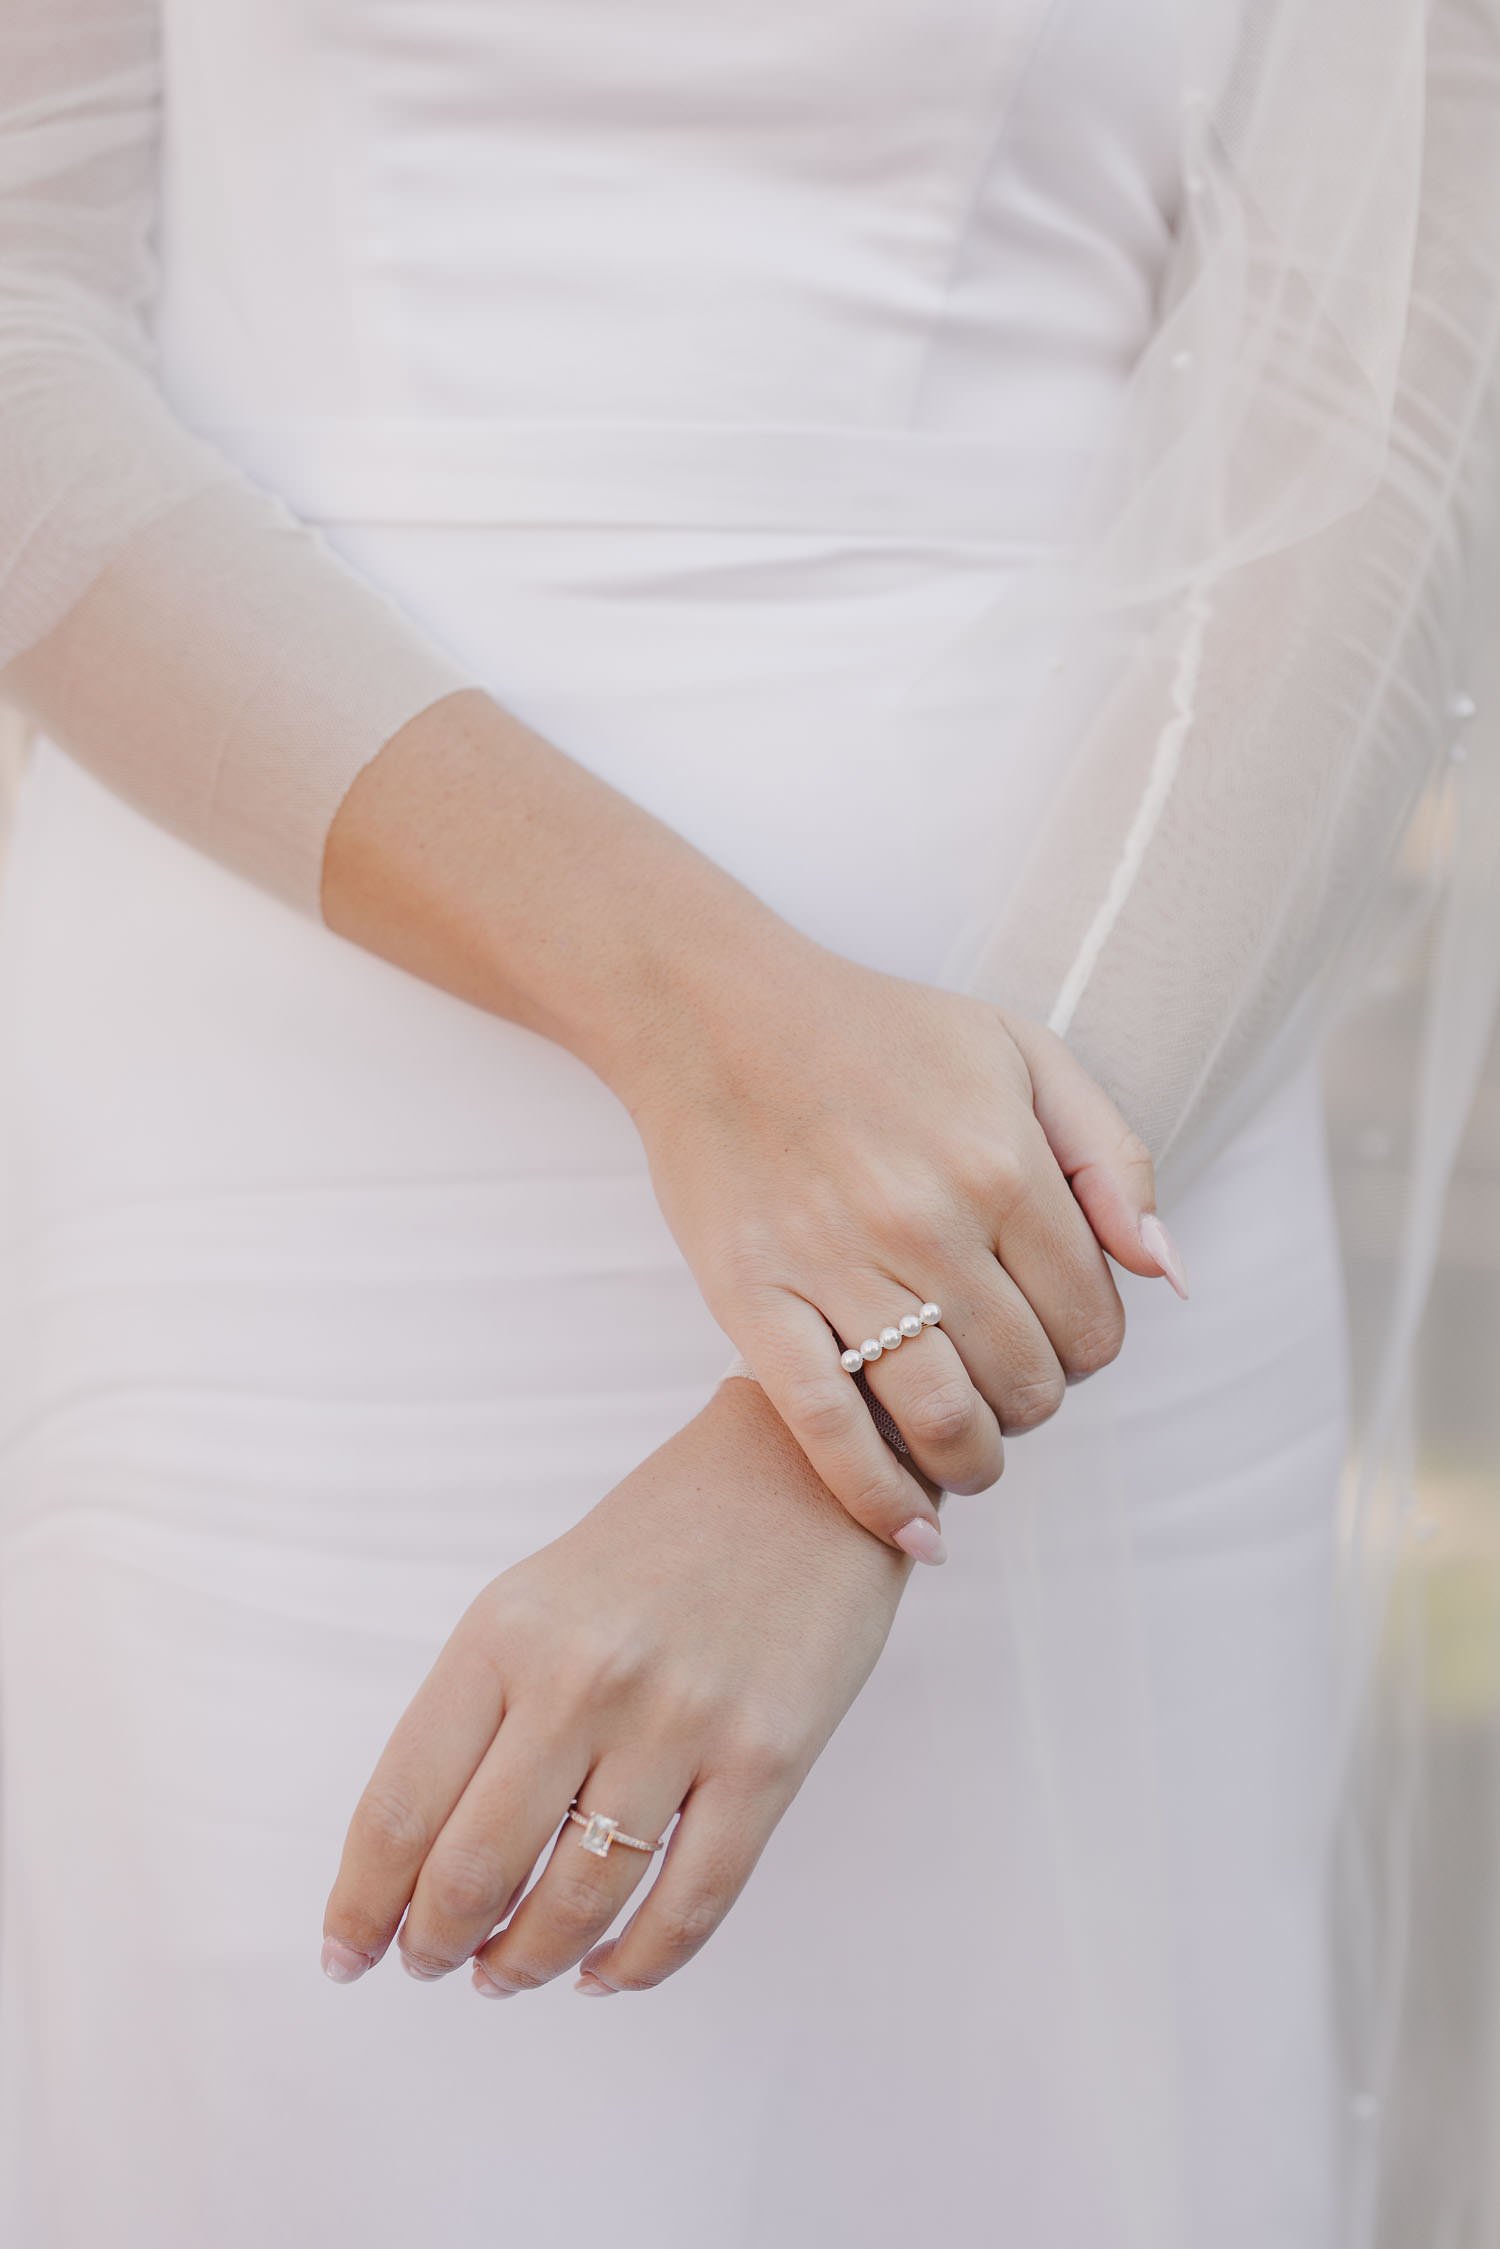 Chic, minimalist pearl bridal jewelry